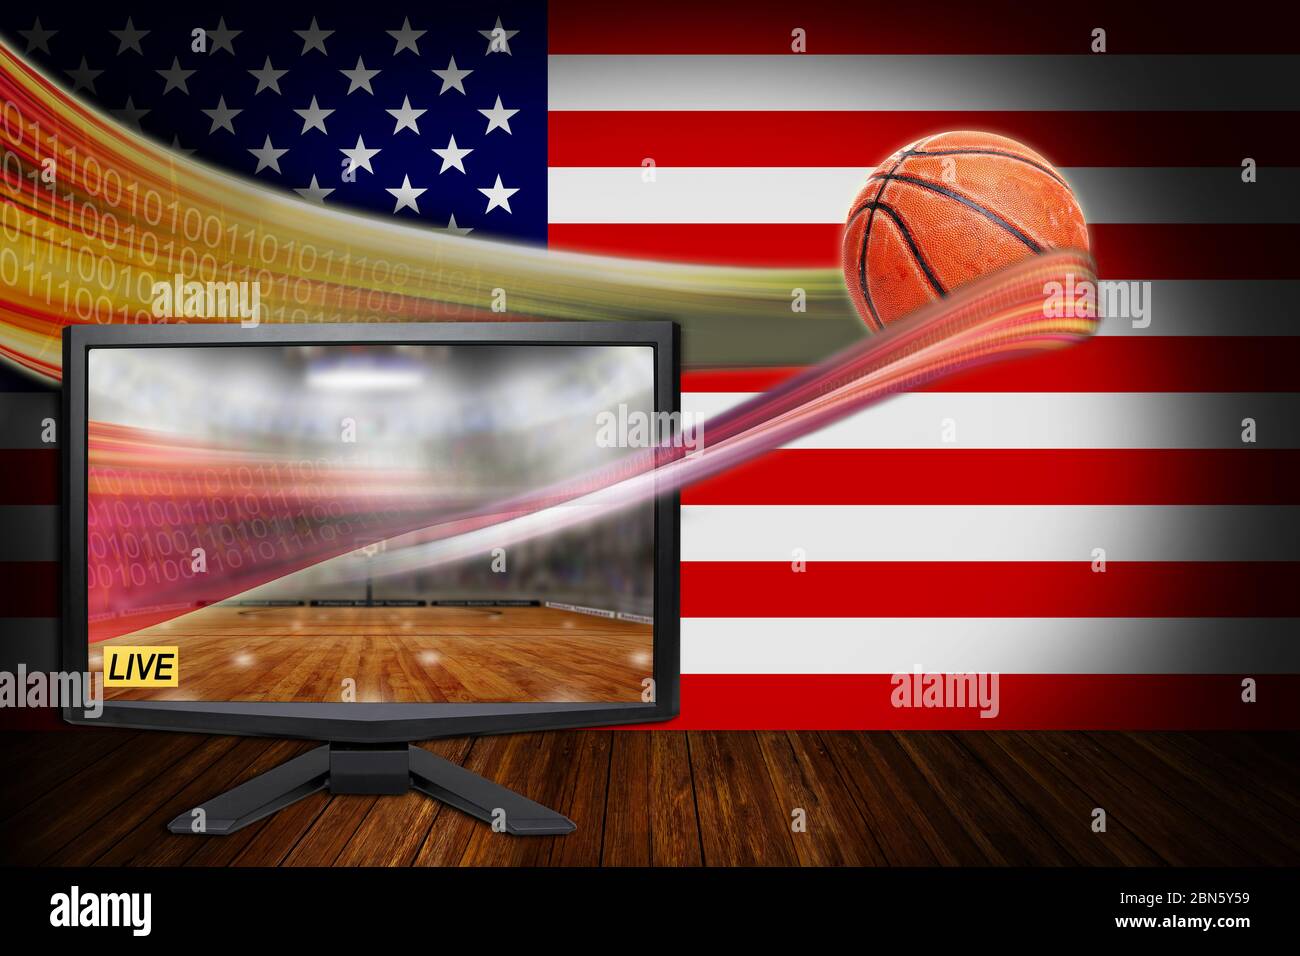 Sports de basket-ball américain Live concept avec moniteur TV illustrant la dernière technologie de diffusion VR et le ballon HD réaliste en vol. Banque D'Images